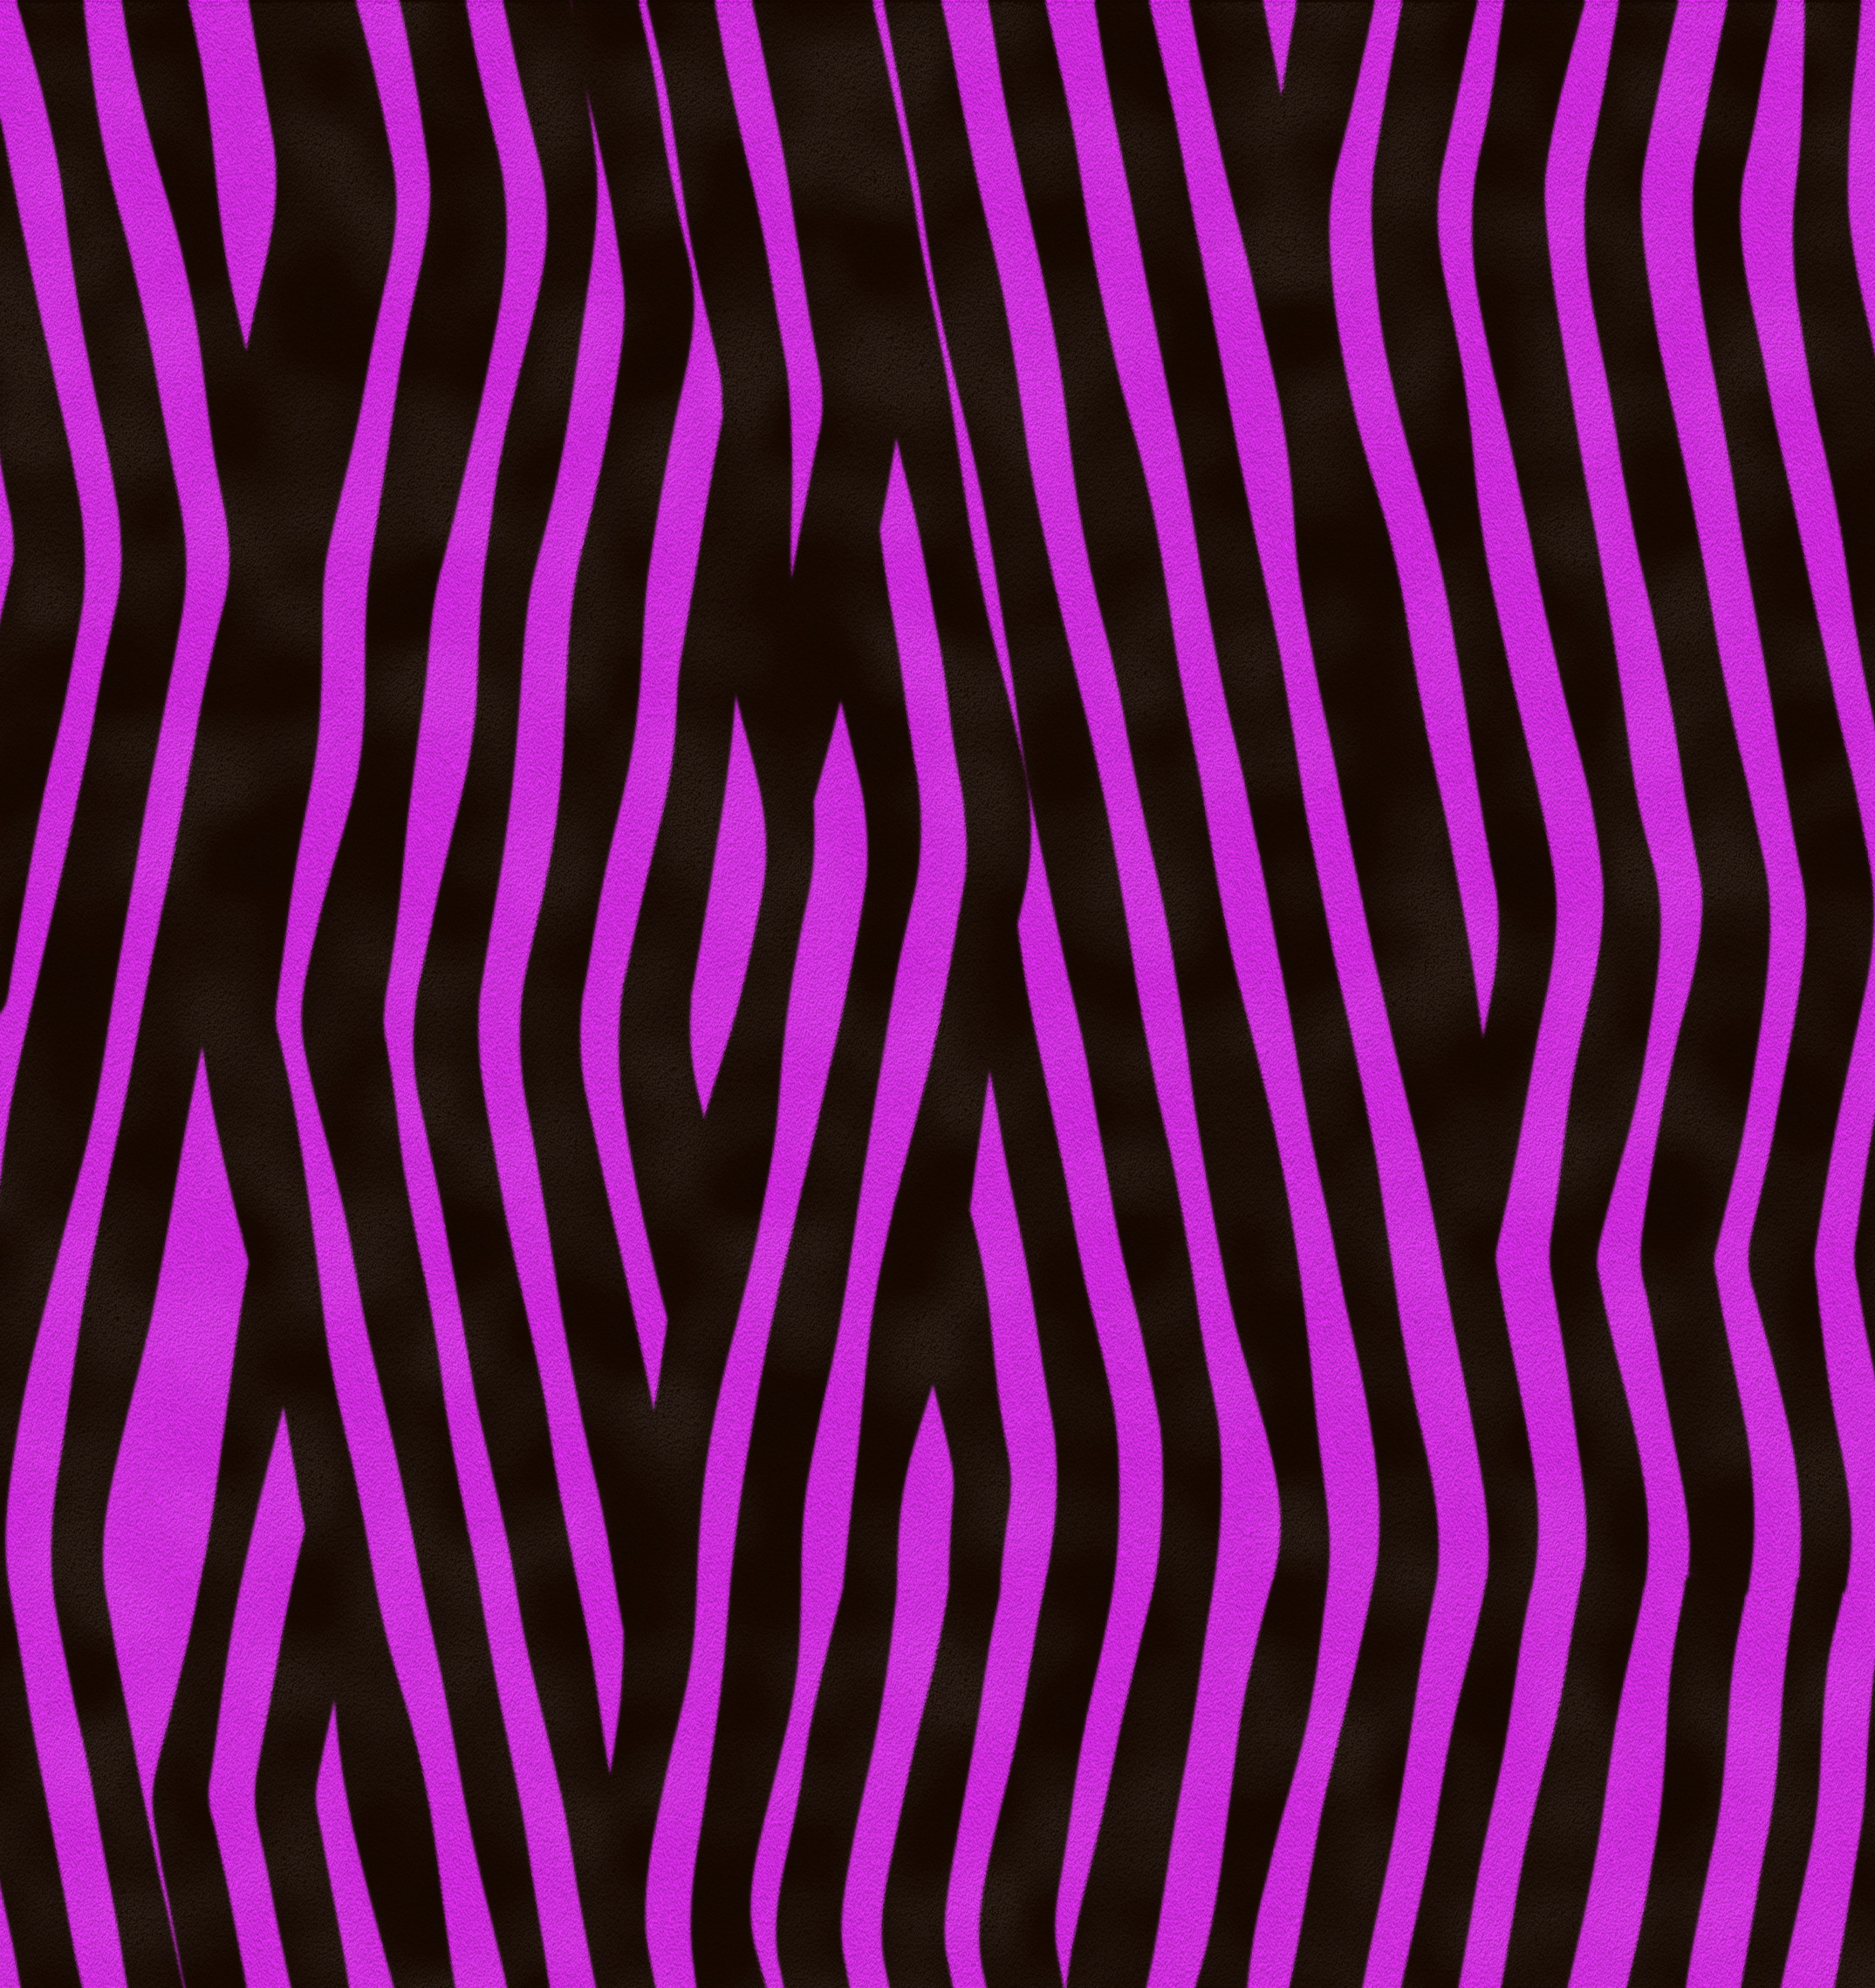 Rainbow Zebra Background Designs ·① WallpaperTag